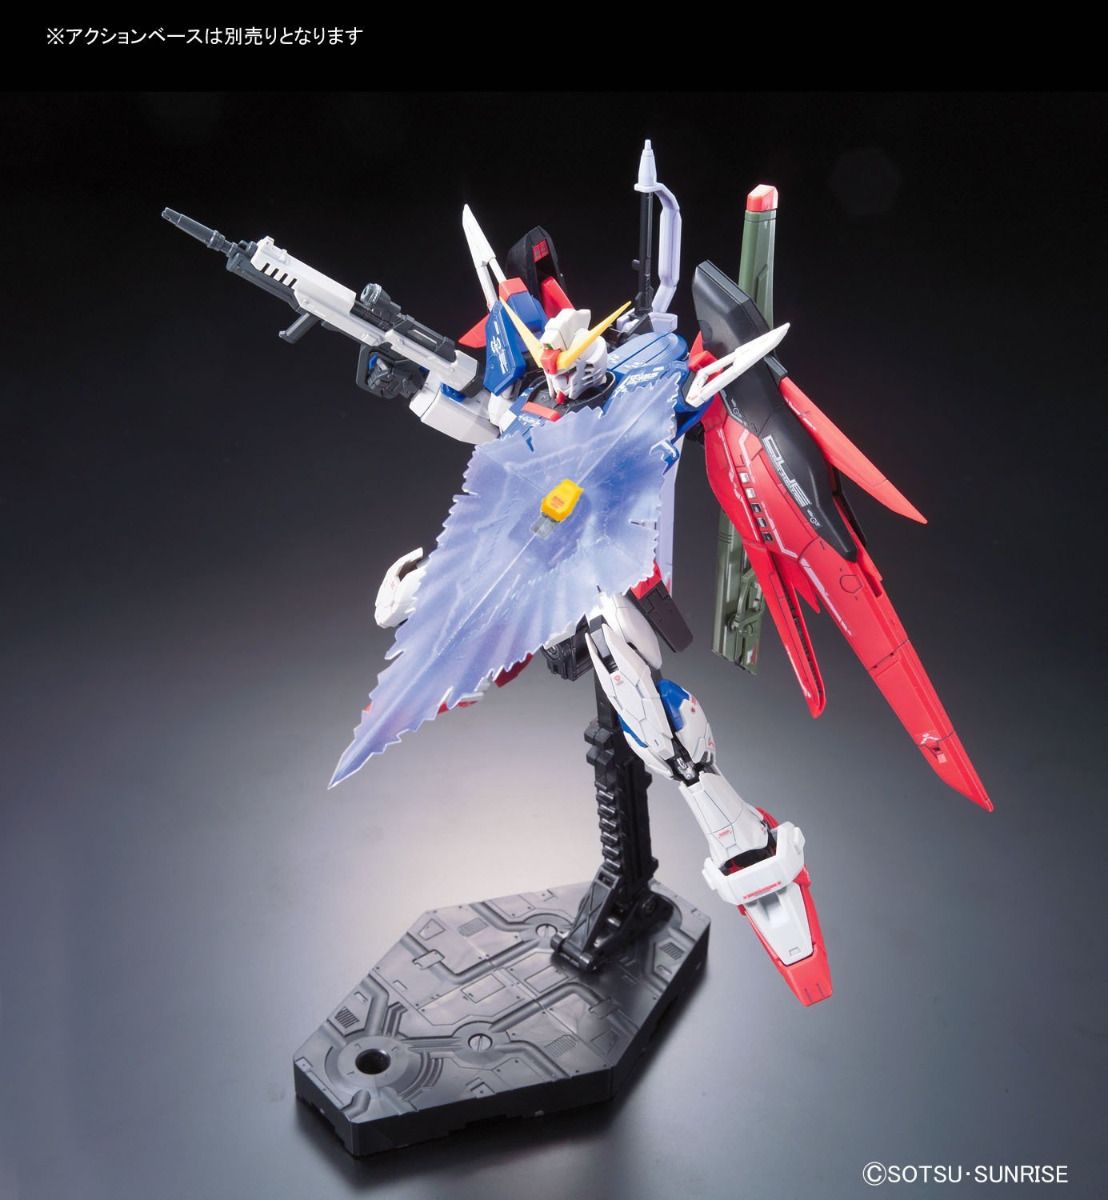 RG #11 Destiny Gundam 1/144 Model Kit